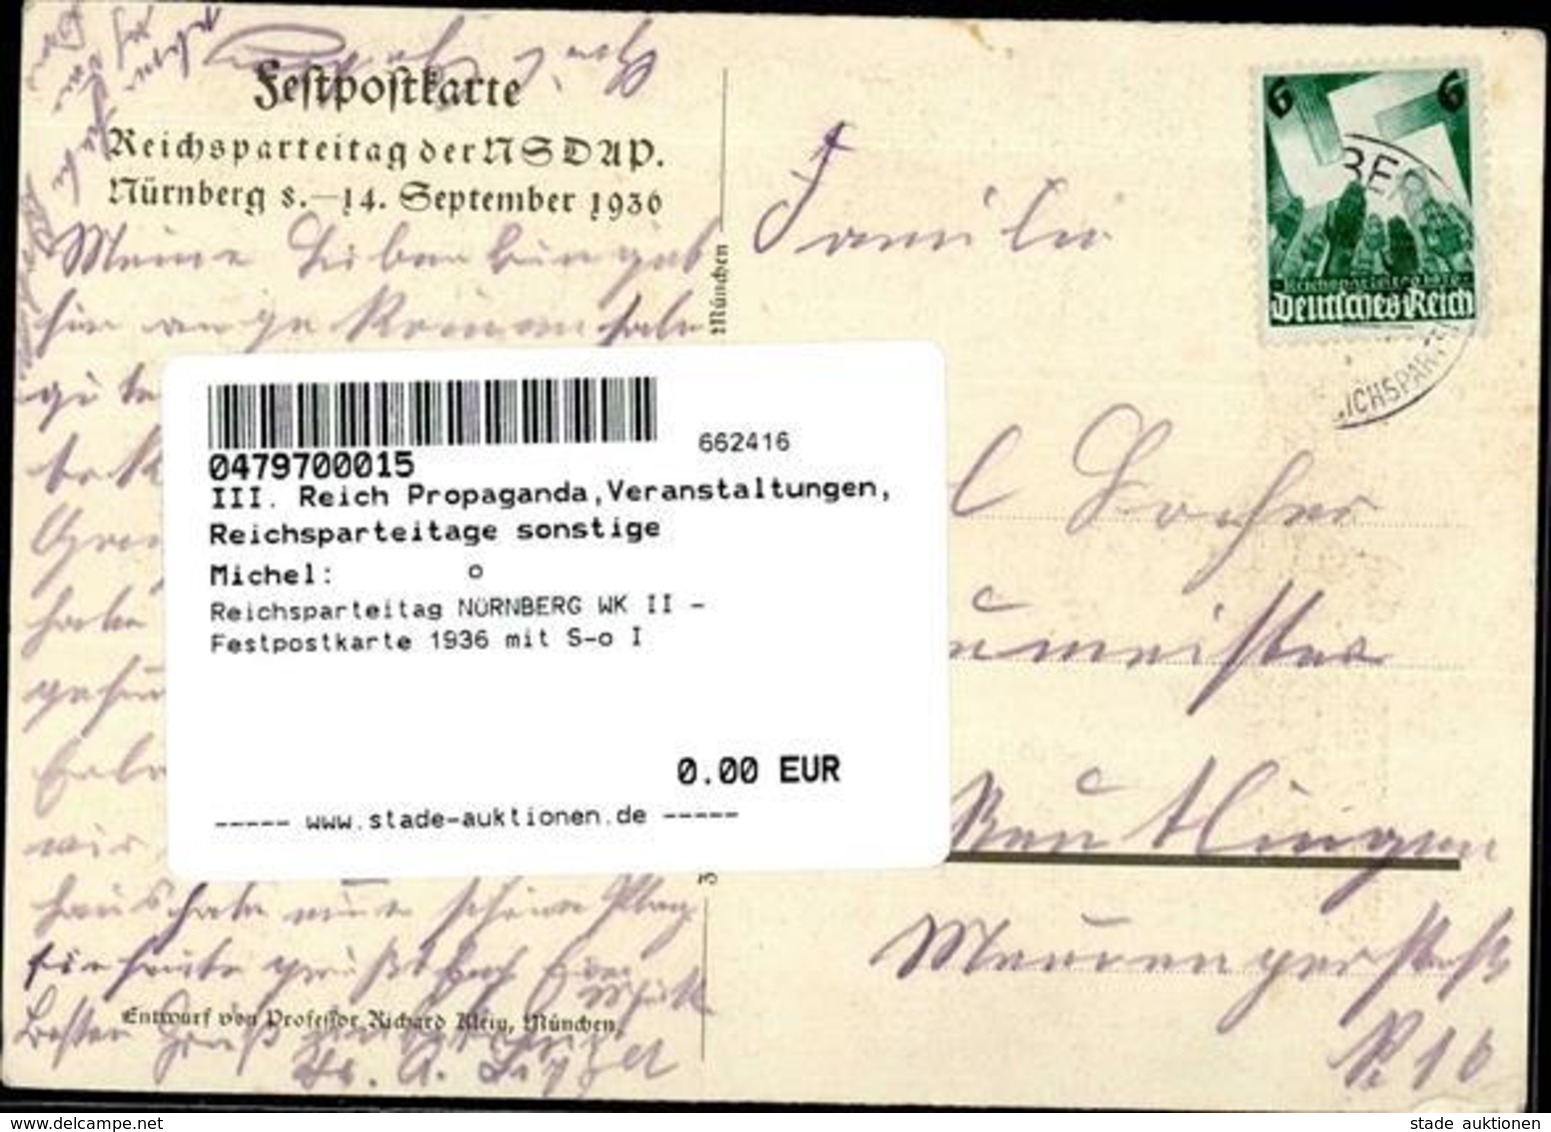 Reichsparteitag NÜRNBERG WK II - Festpostkarte 1936 Mit S-o I - Guerre 1939-45